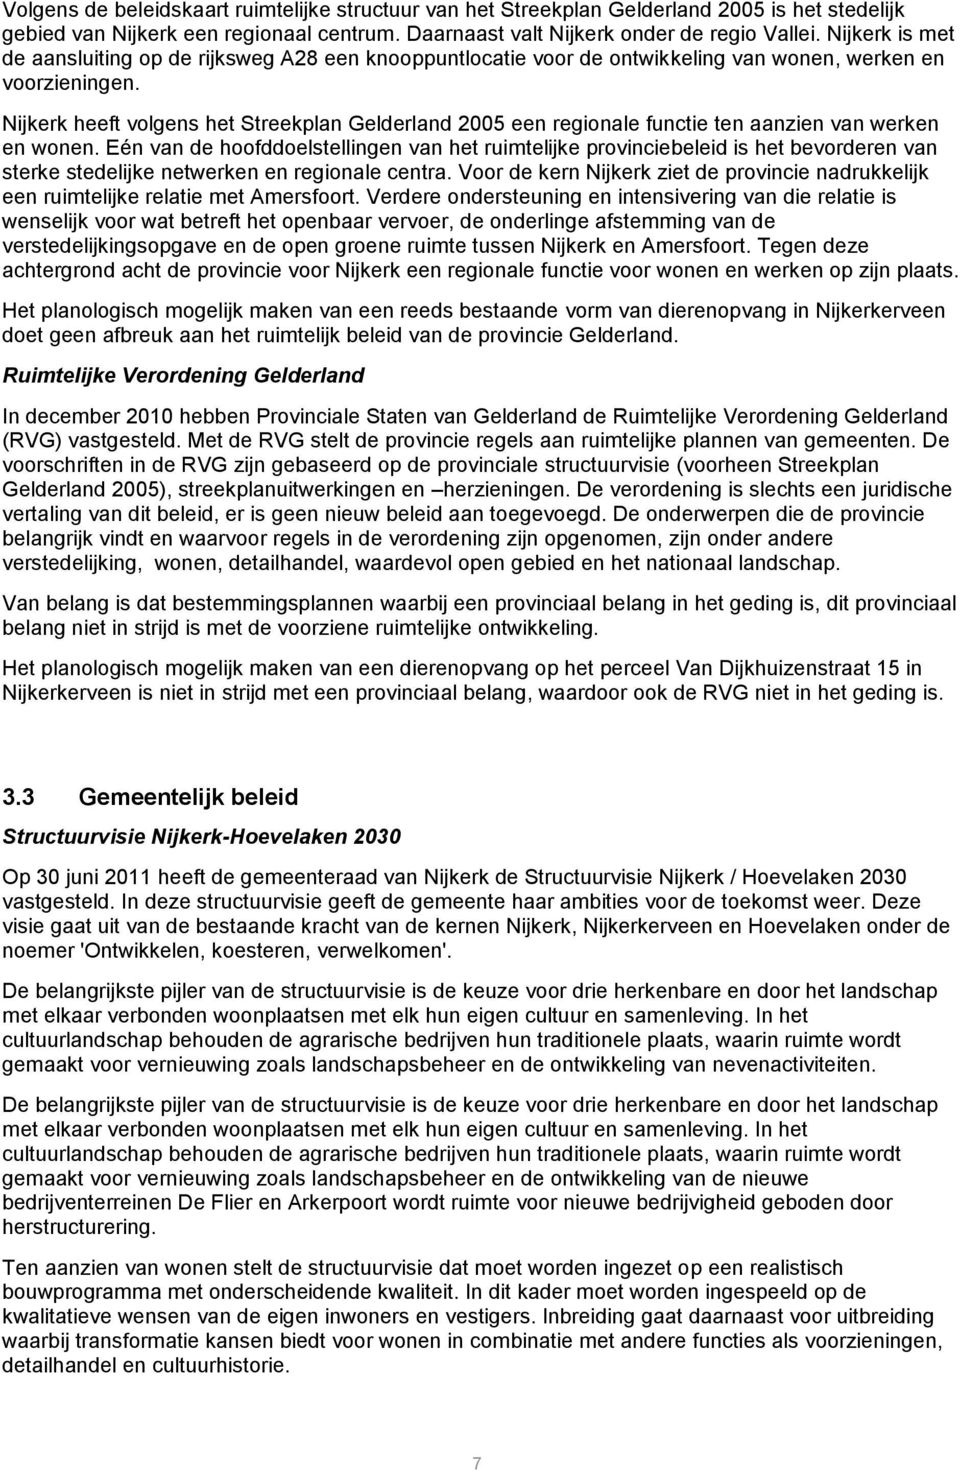 Nijkerk heeft volgens het Streekplan Gelderland 2005 een regionale functie ten aanzien van werken en wonen.